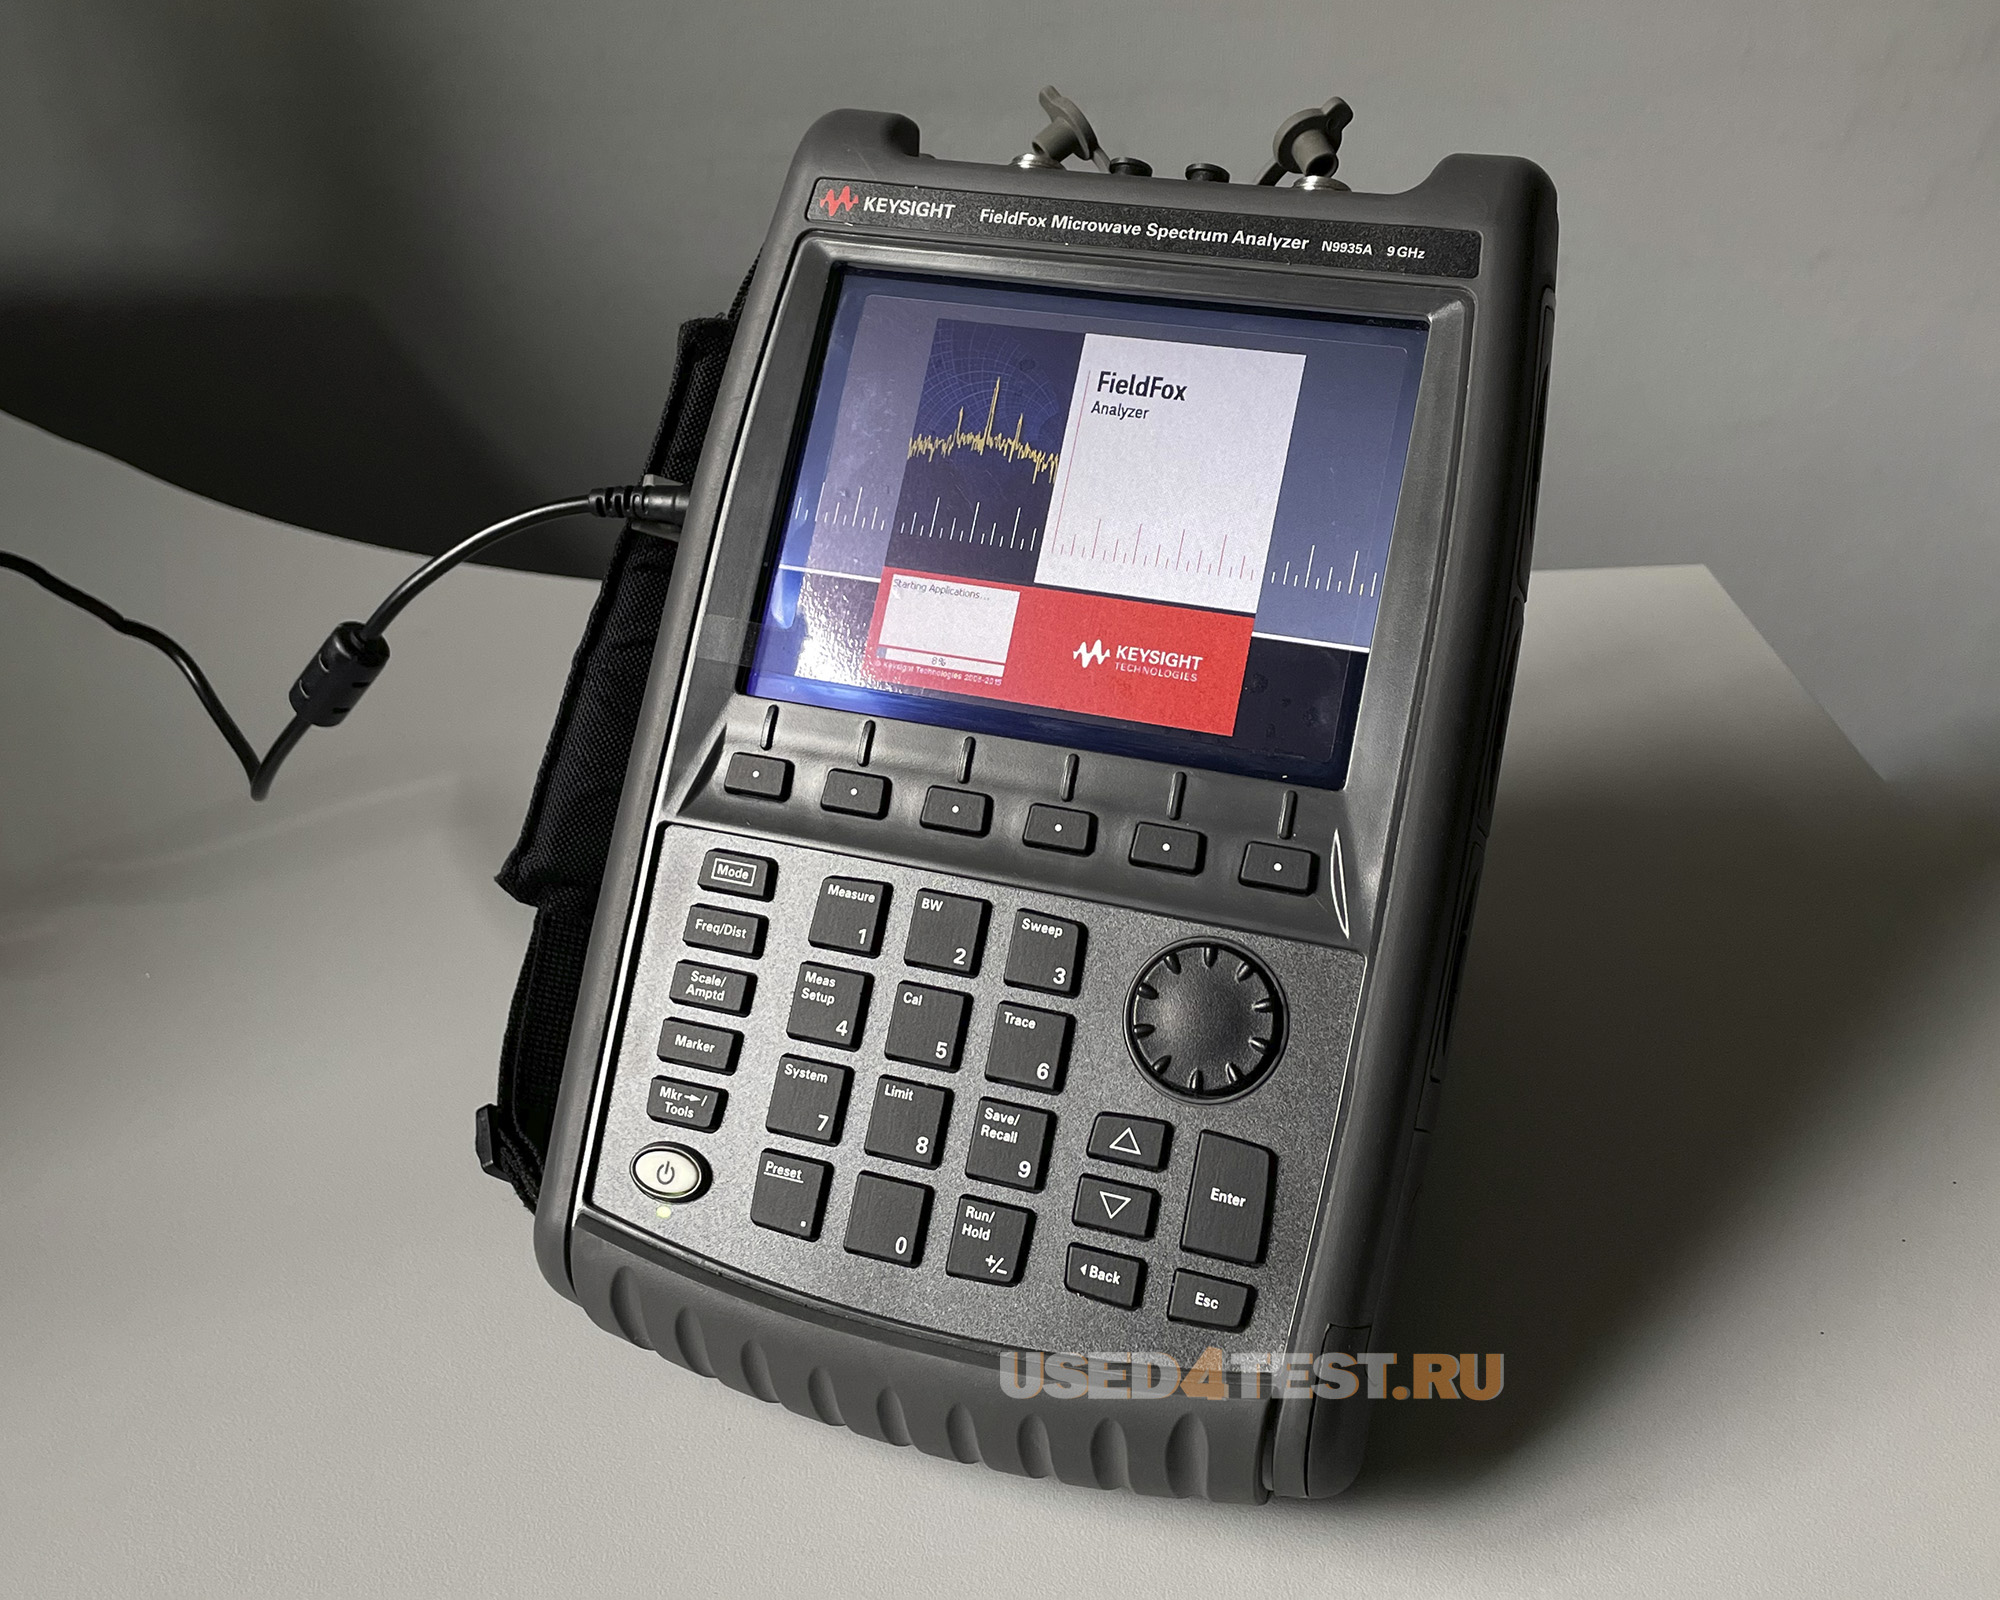 Портативный анализатор спектра
Keysight FieldFox N9935A
с диапазоном от 5 кГц до 9 ГГц